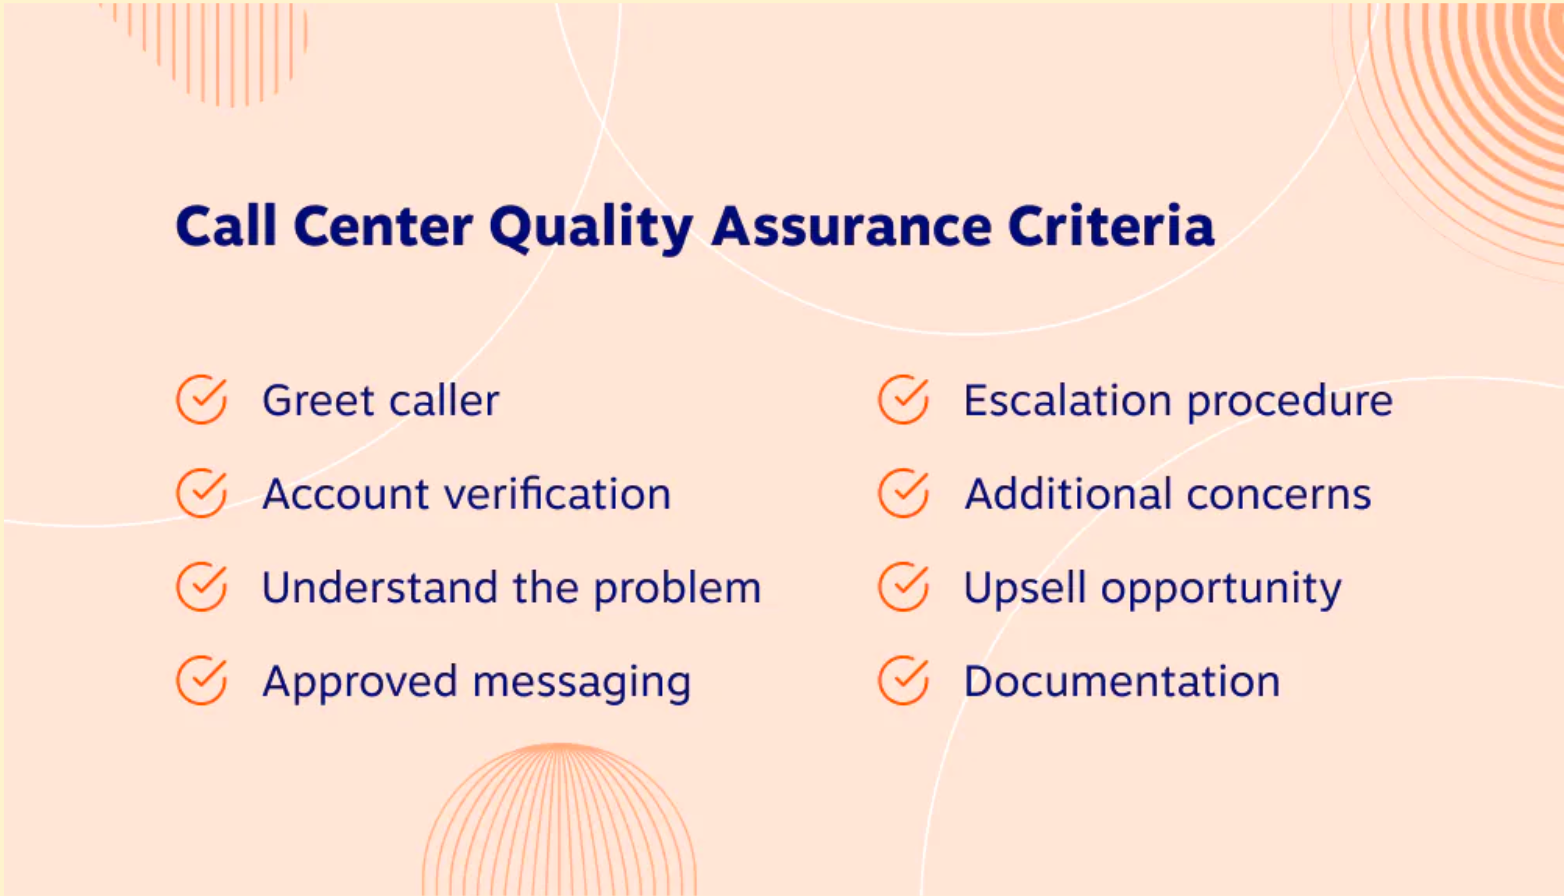 Criterii de asigurare a calității centrului de apeluri